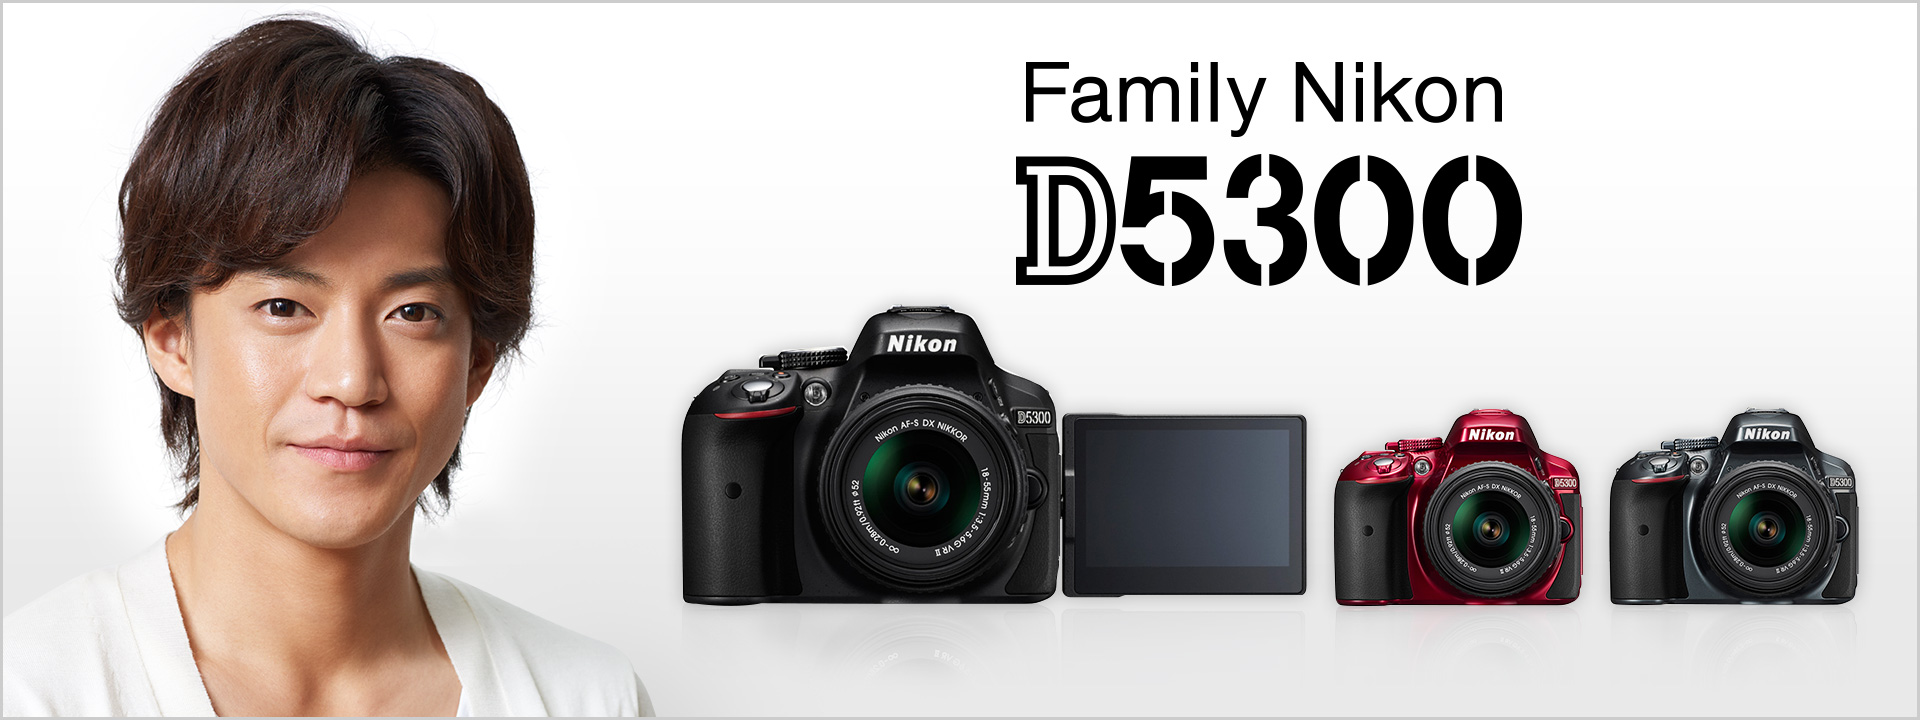 D5300 - 概要 | 一眼レフカメラ | ニコンイメージング